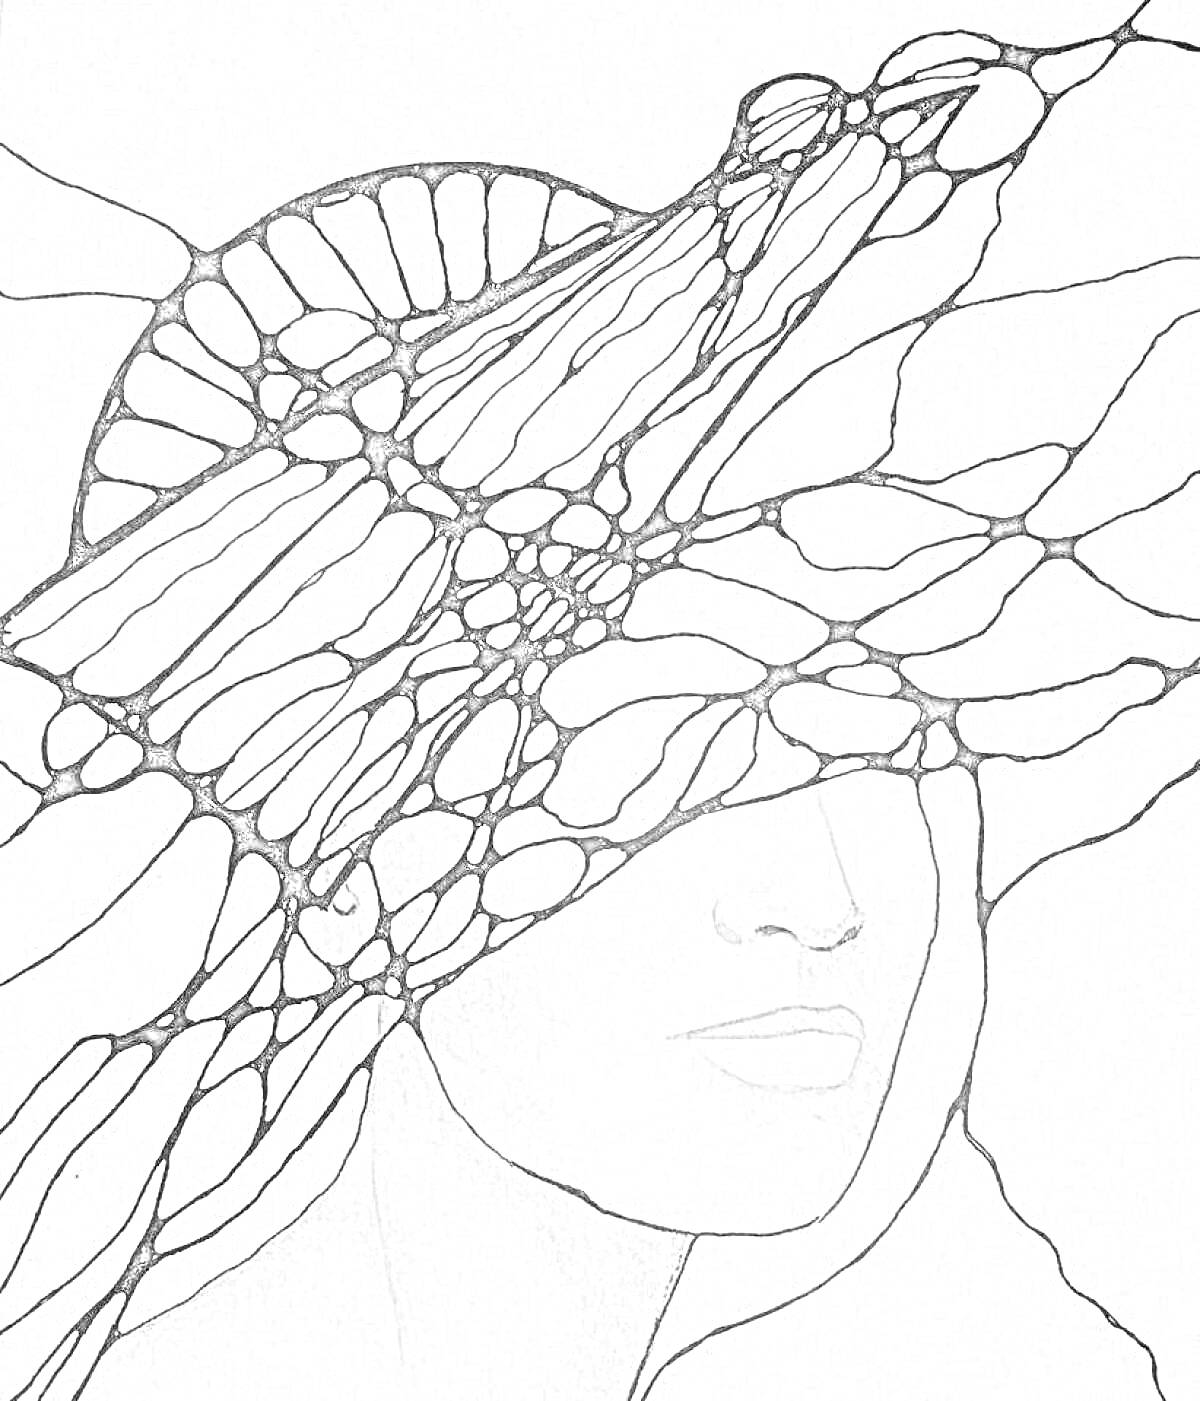 Раскраска Лицо женщины с абстрактными нейрографическими линиями, пересекающими её лицо и пространство вокруг.